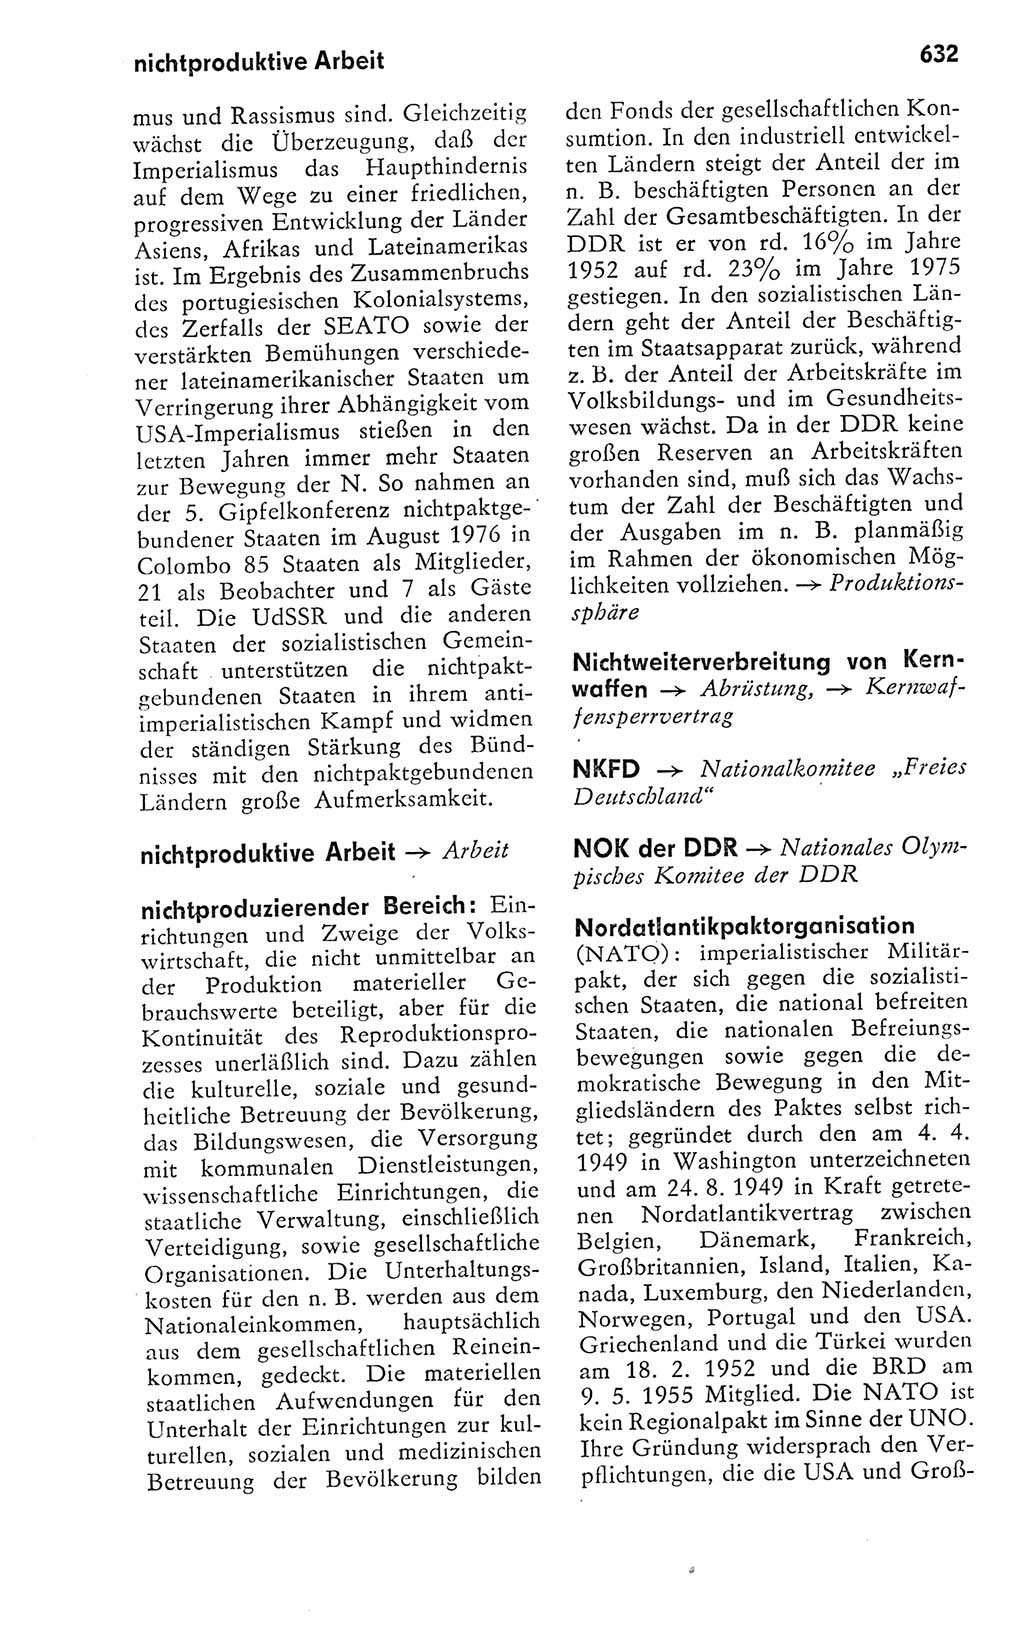 Kleines politisches Wörterbuch [Deutsche Demokratische Republik (DDR)] 1978, Seite 632 (Kl. pol. Wb. DDR 1978, S. 632)